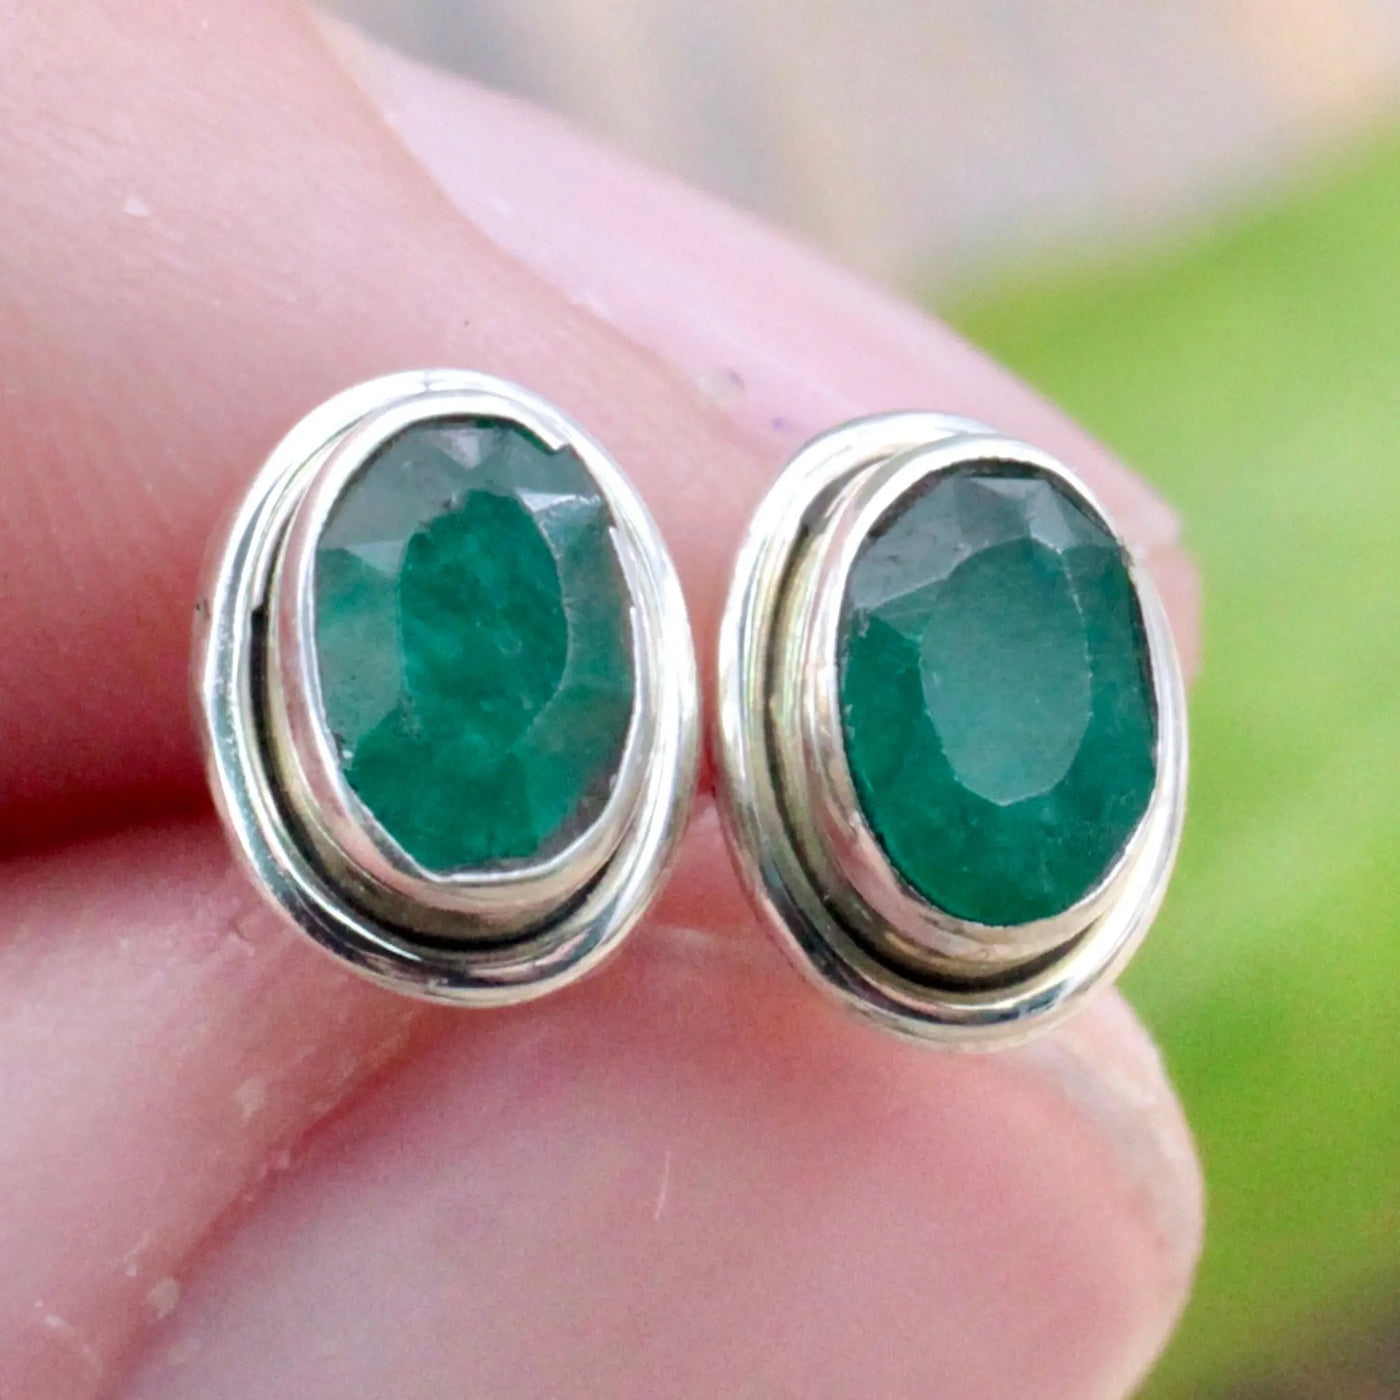 Emerald Stud Earrings with Silverwork in Sterling Silver